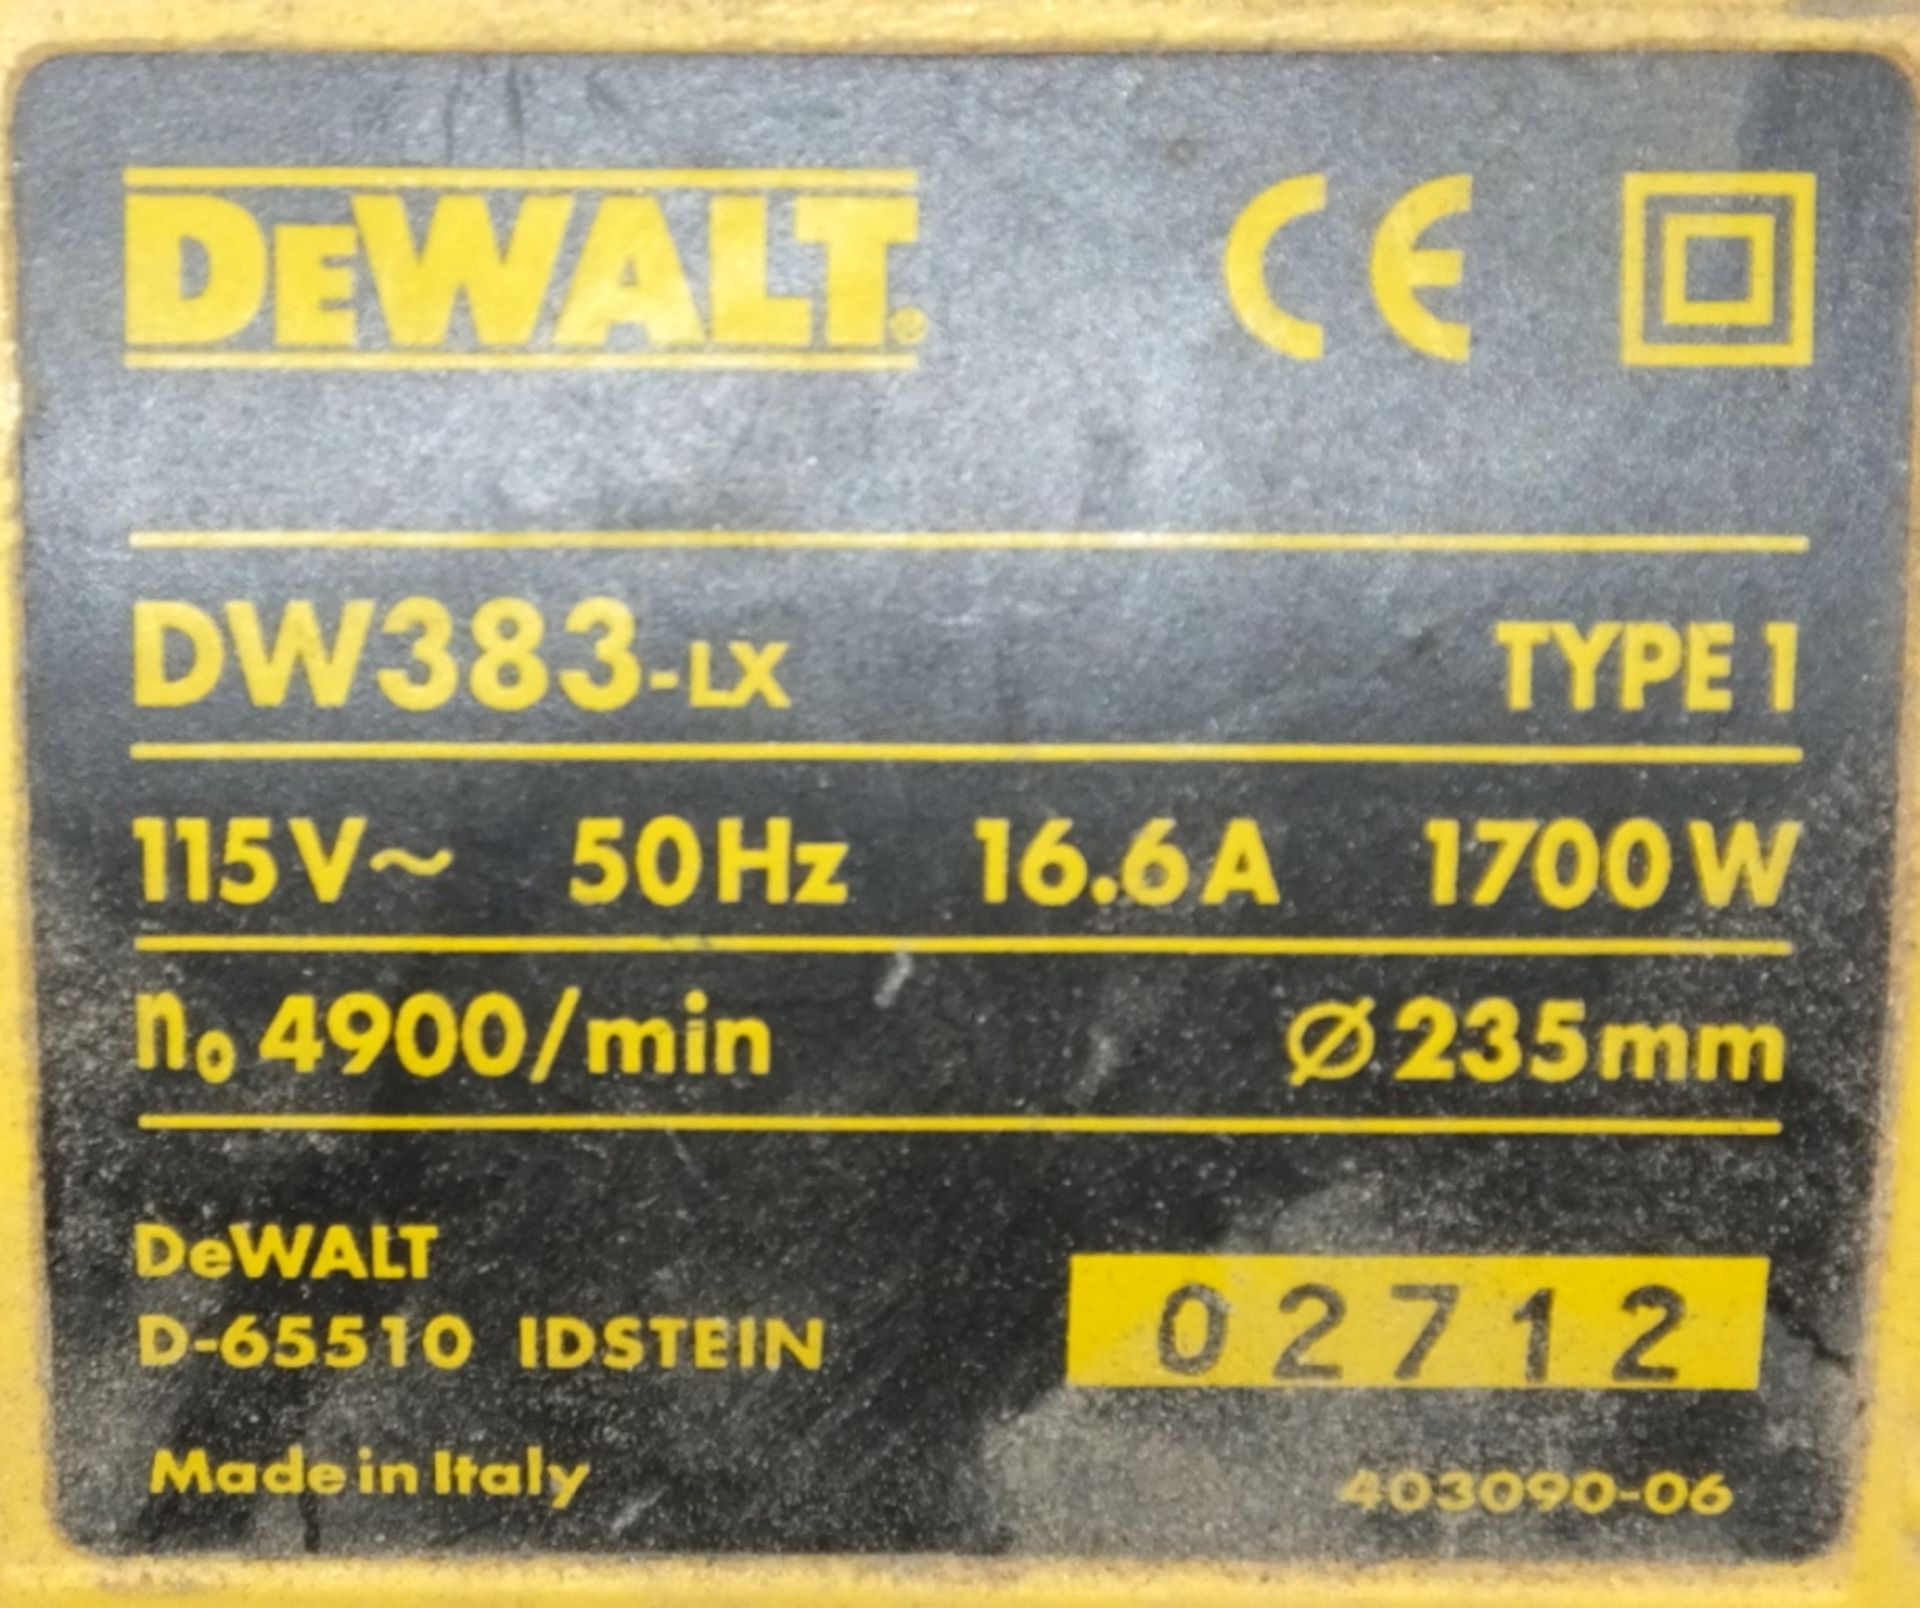 Dewalt DW 383-LX Circular Saw - Image 2 of 2